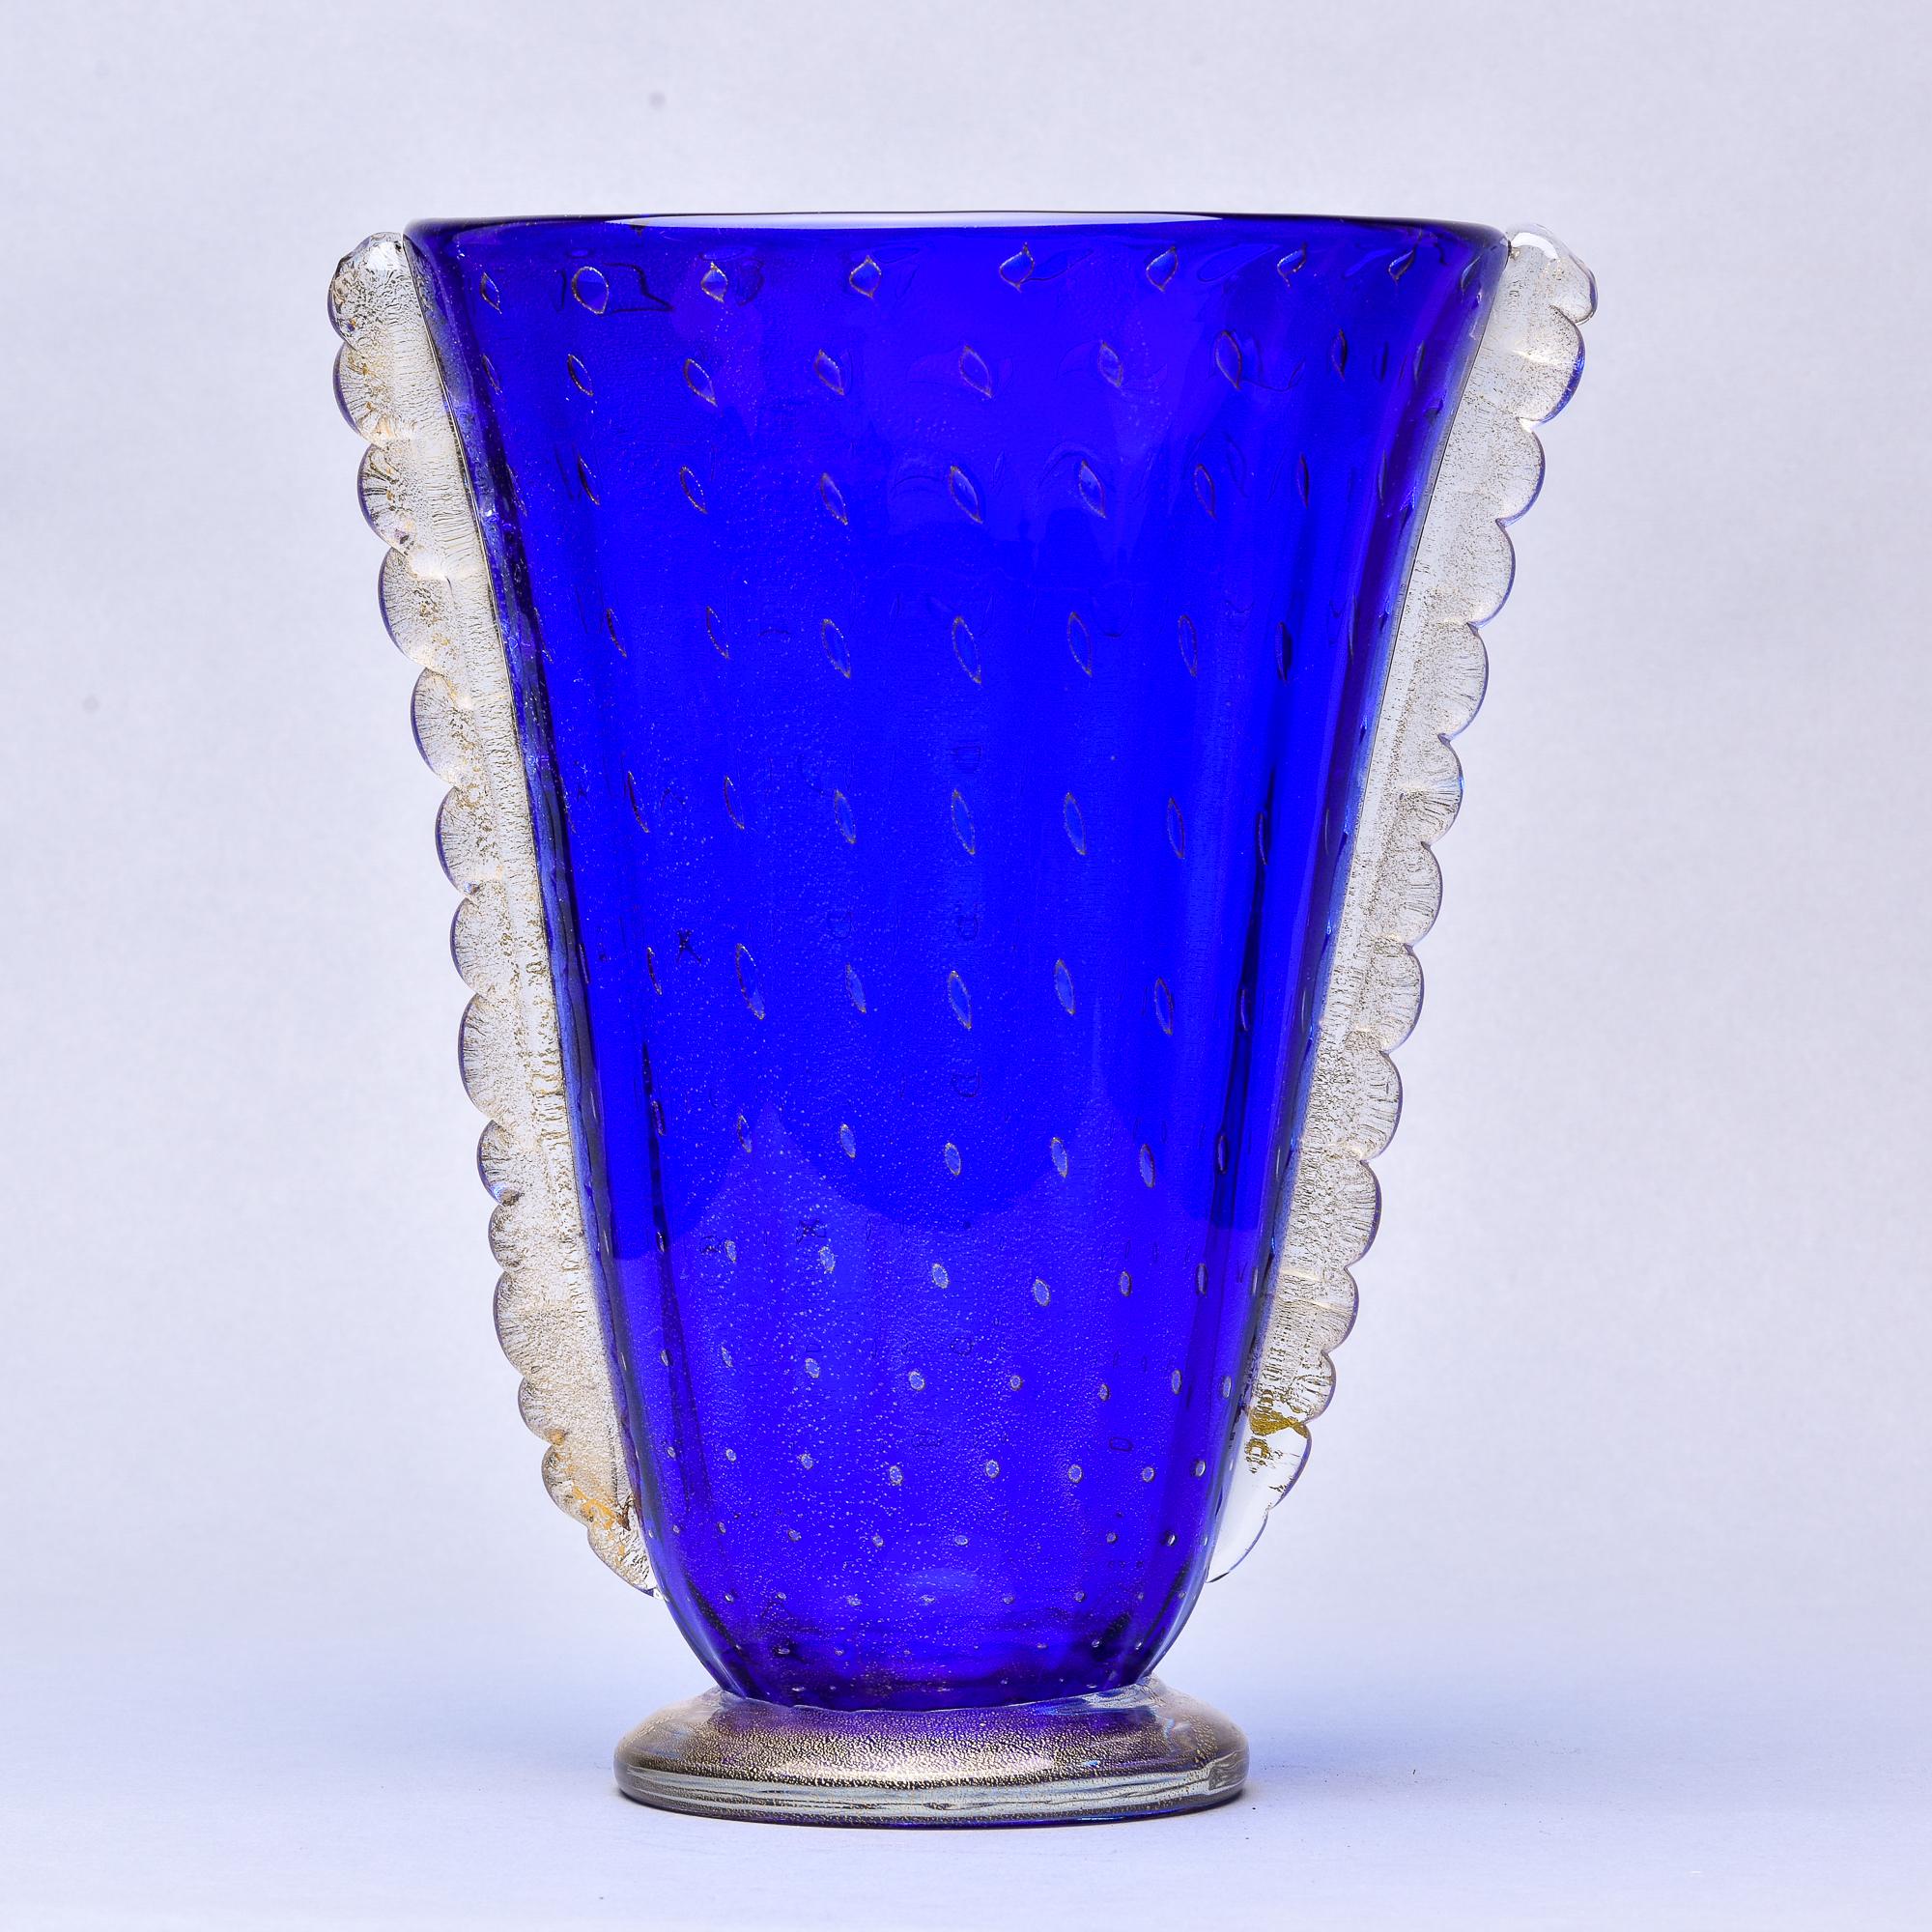 Diese in Italien gefundene blaue Murano-Glasvase aus den 1950er Jahren hat einen ausgestellten Körper mit kontrastierenden dekorativen Seitenrippen und wird Barovier zugeschrieben. Sockel und Seiten sind aus klarem Glas mit Goldeinschlüssen